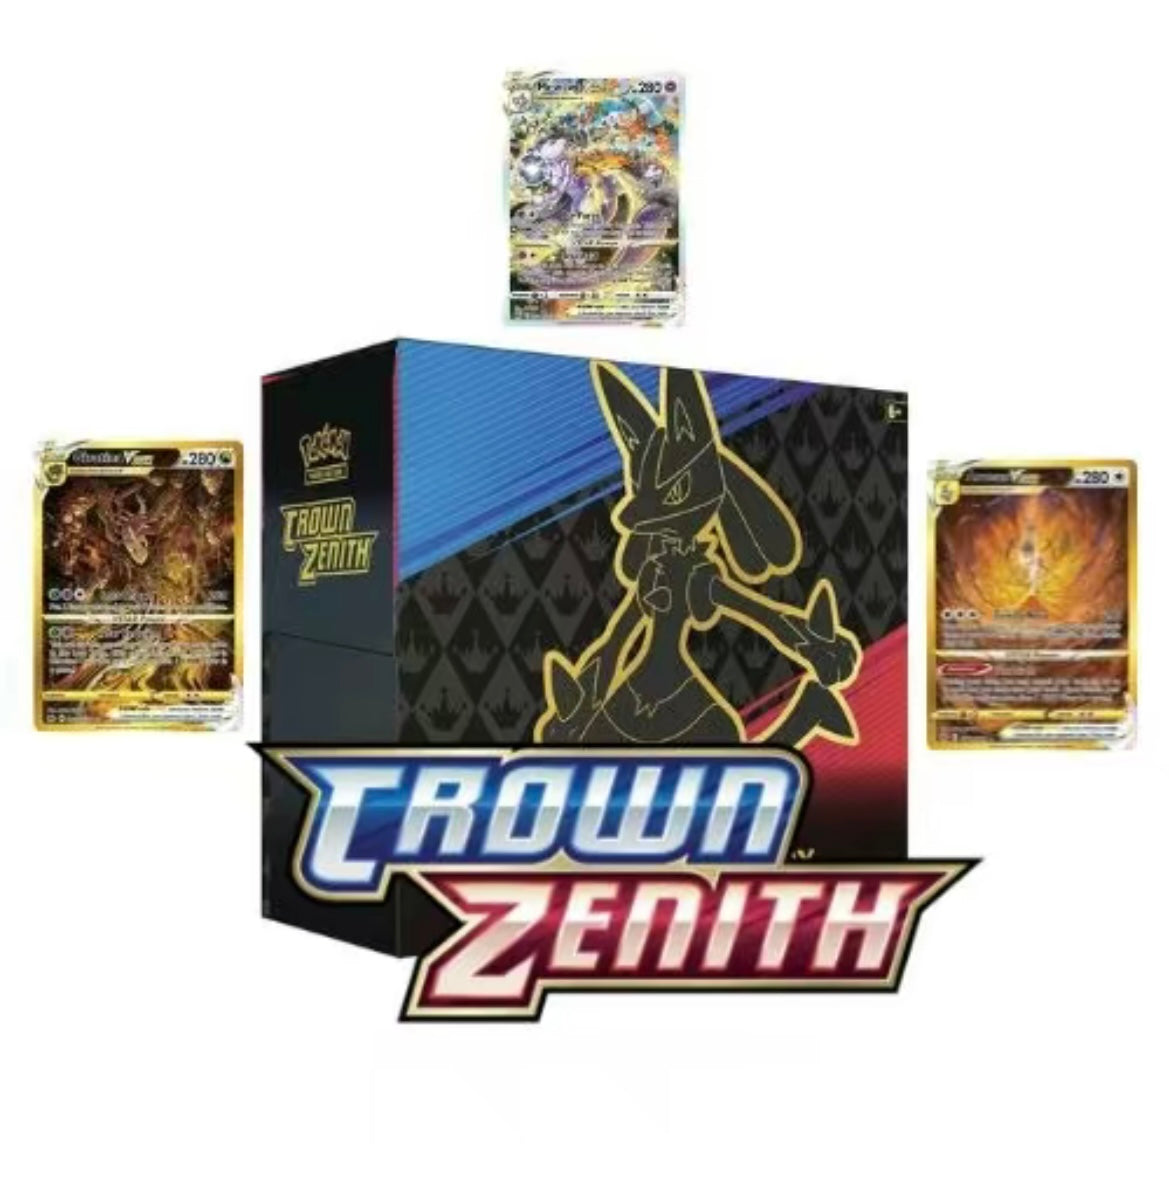 Pokémon Crown Zenith Elite Trainer Box